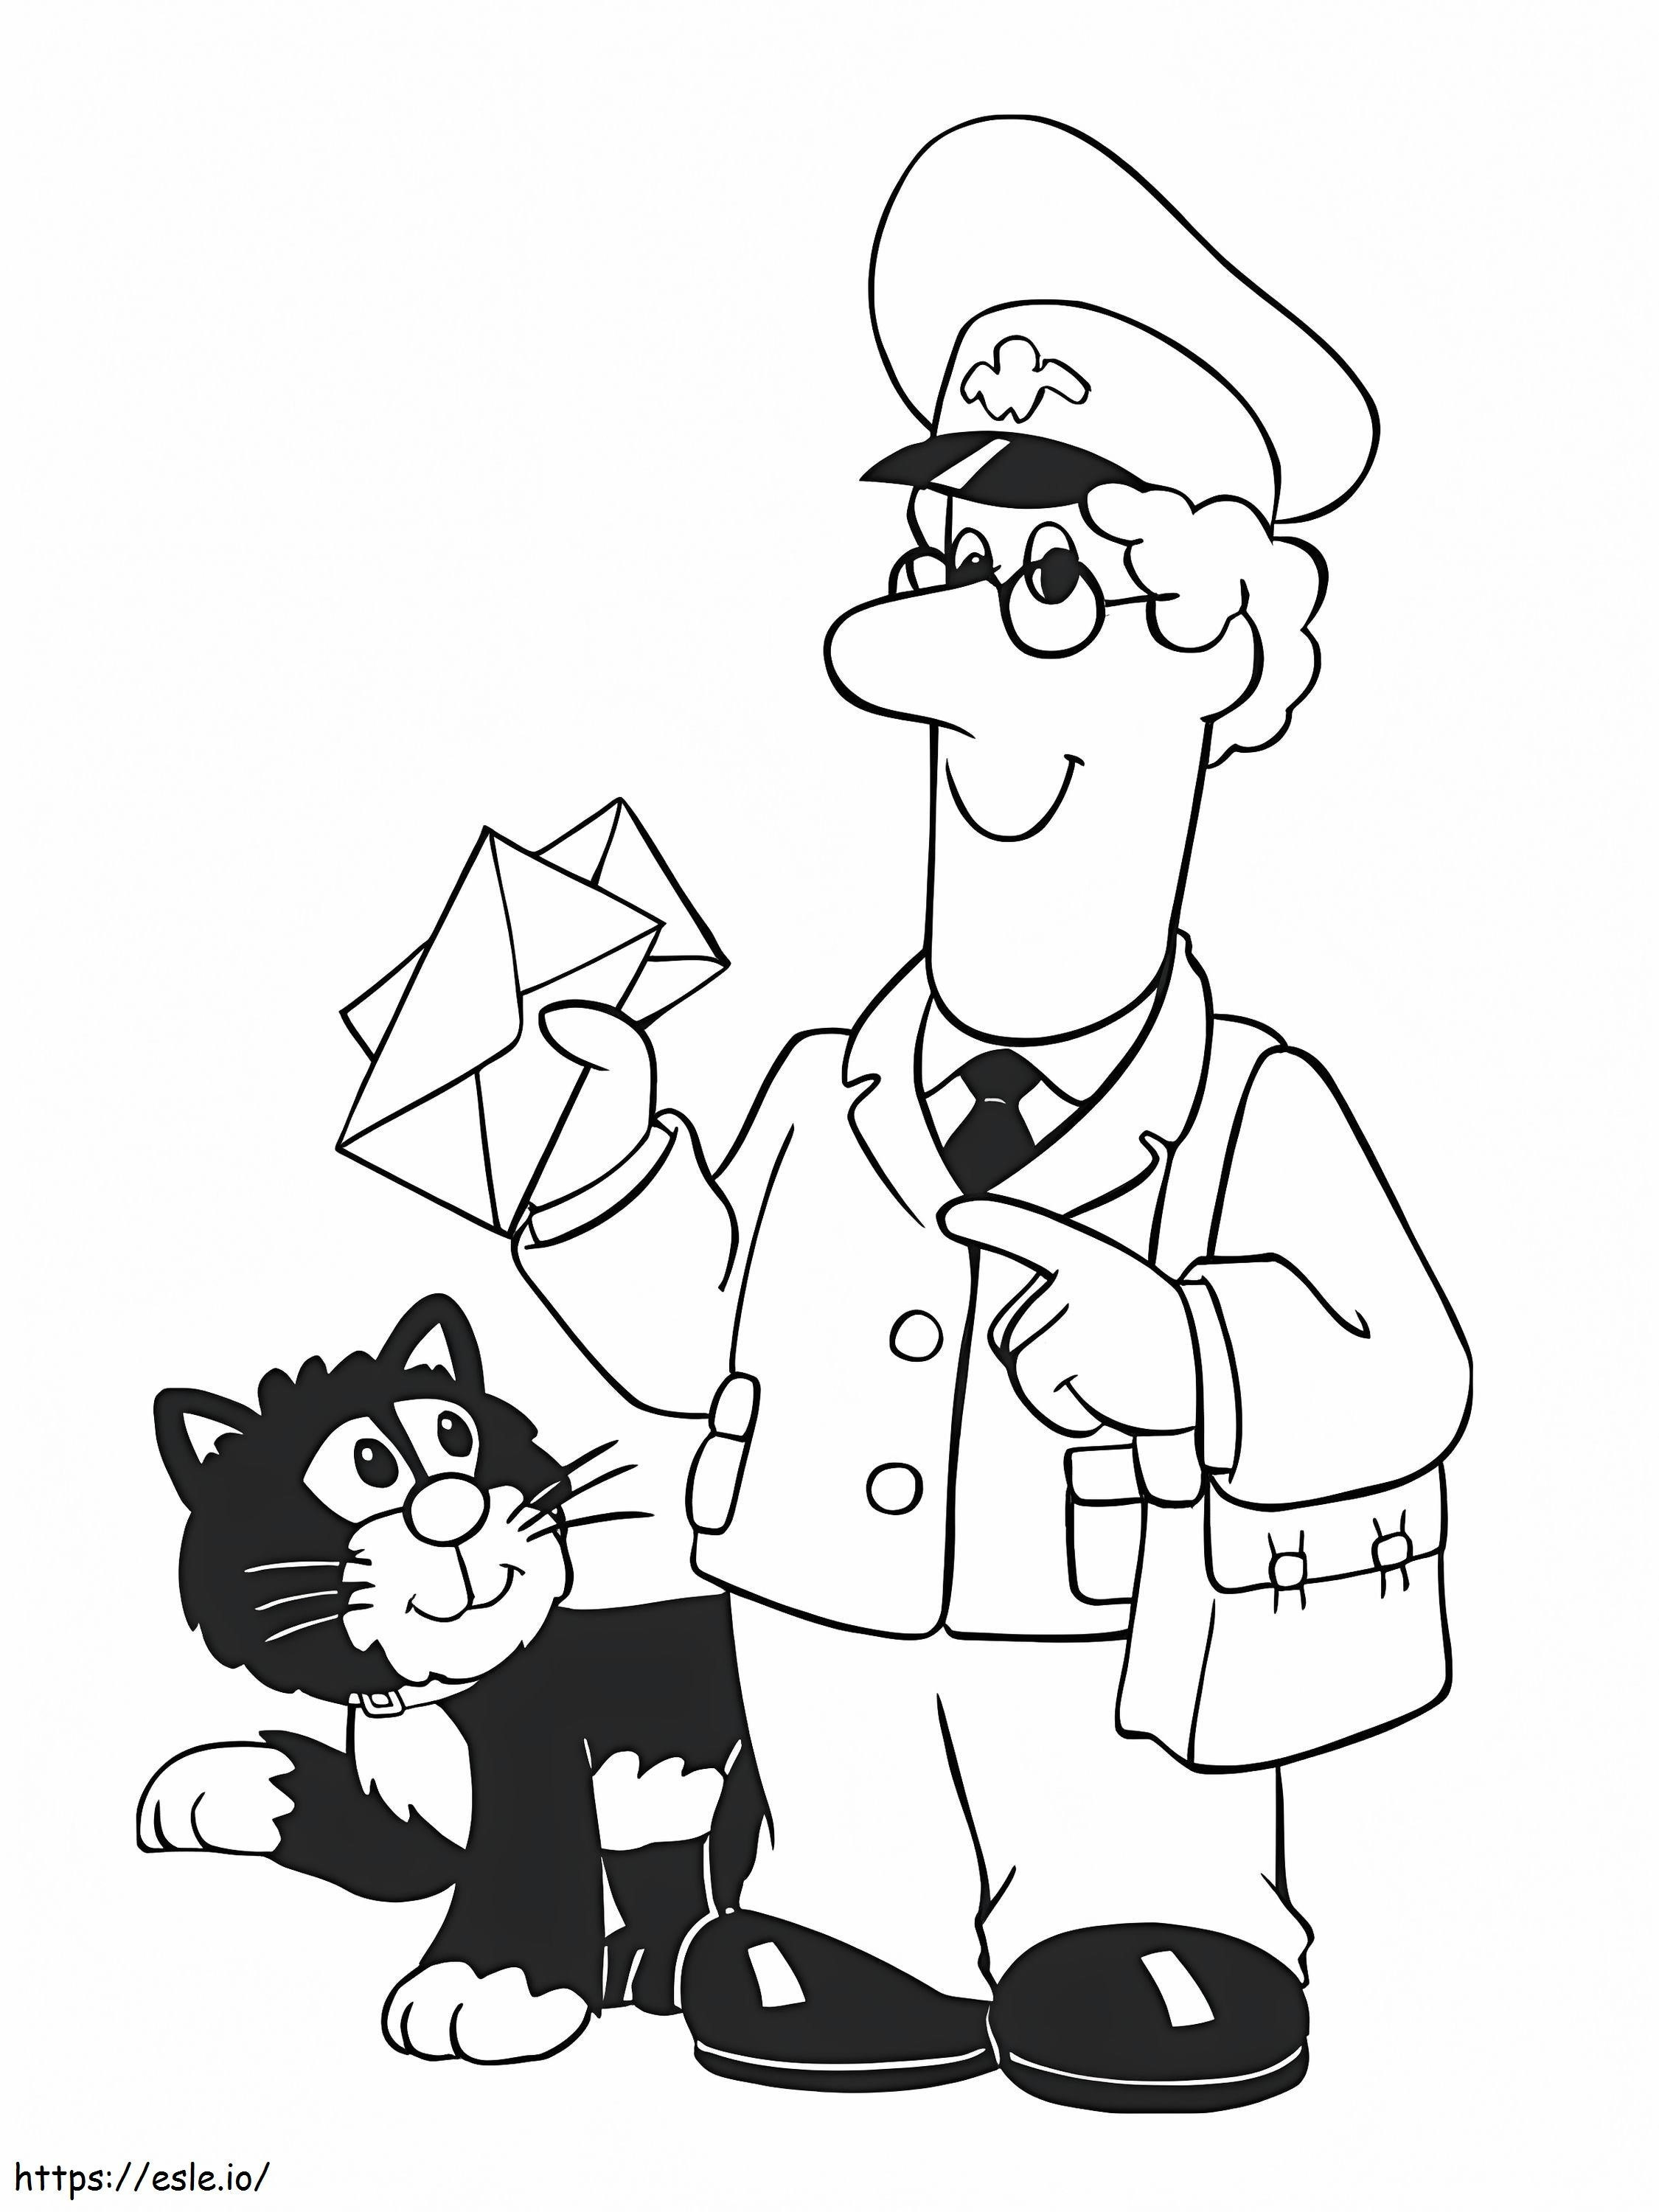 Postacı ve Kara Kedi boyama